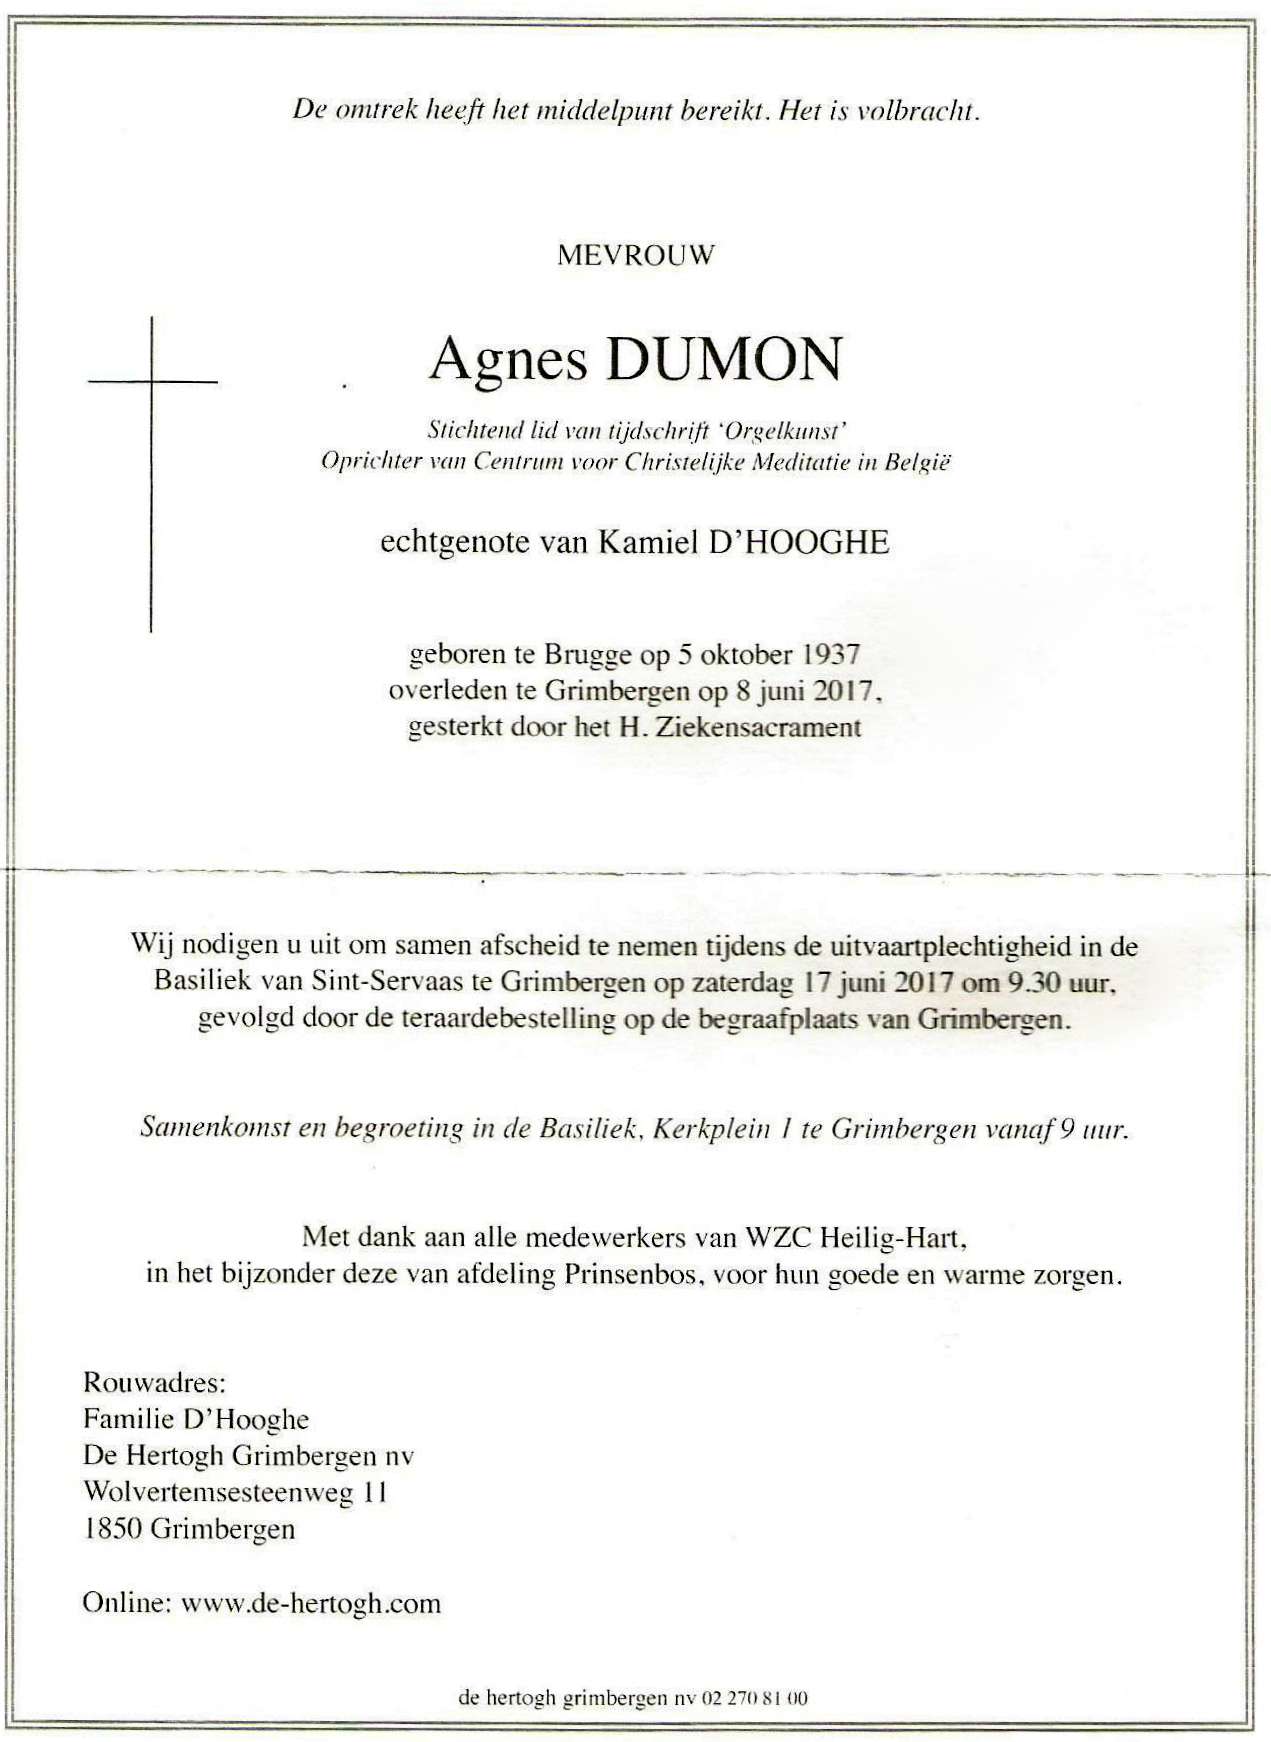 Agnes Dumon 1